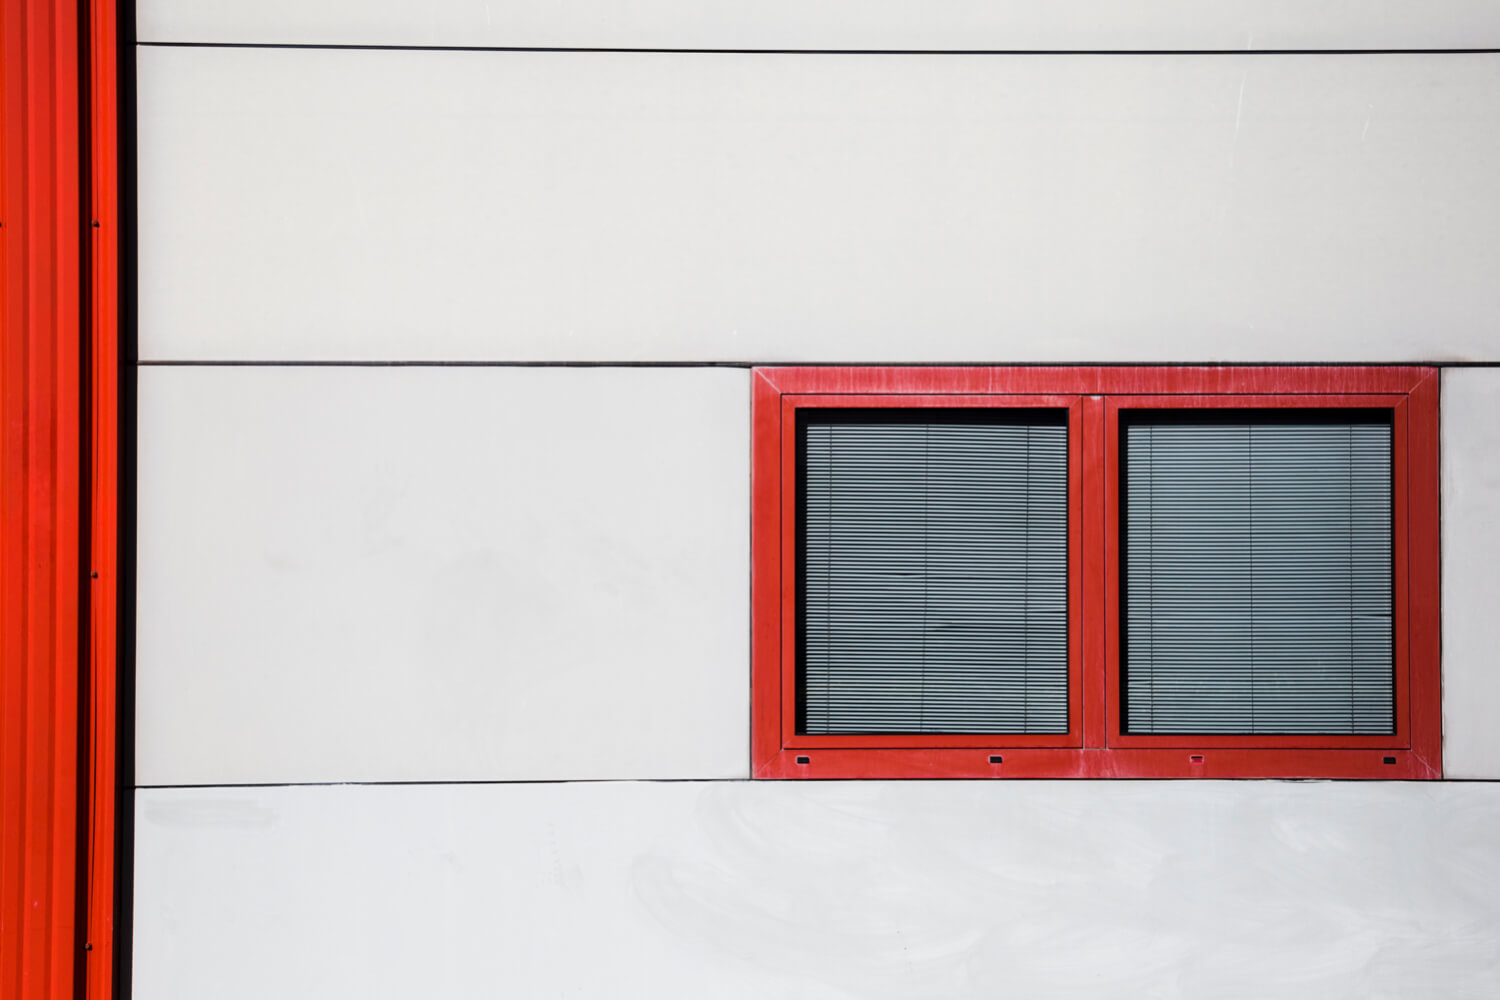 Ventajas de las ventanas de PVC: ocho claves de enorme utilidad